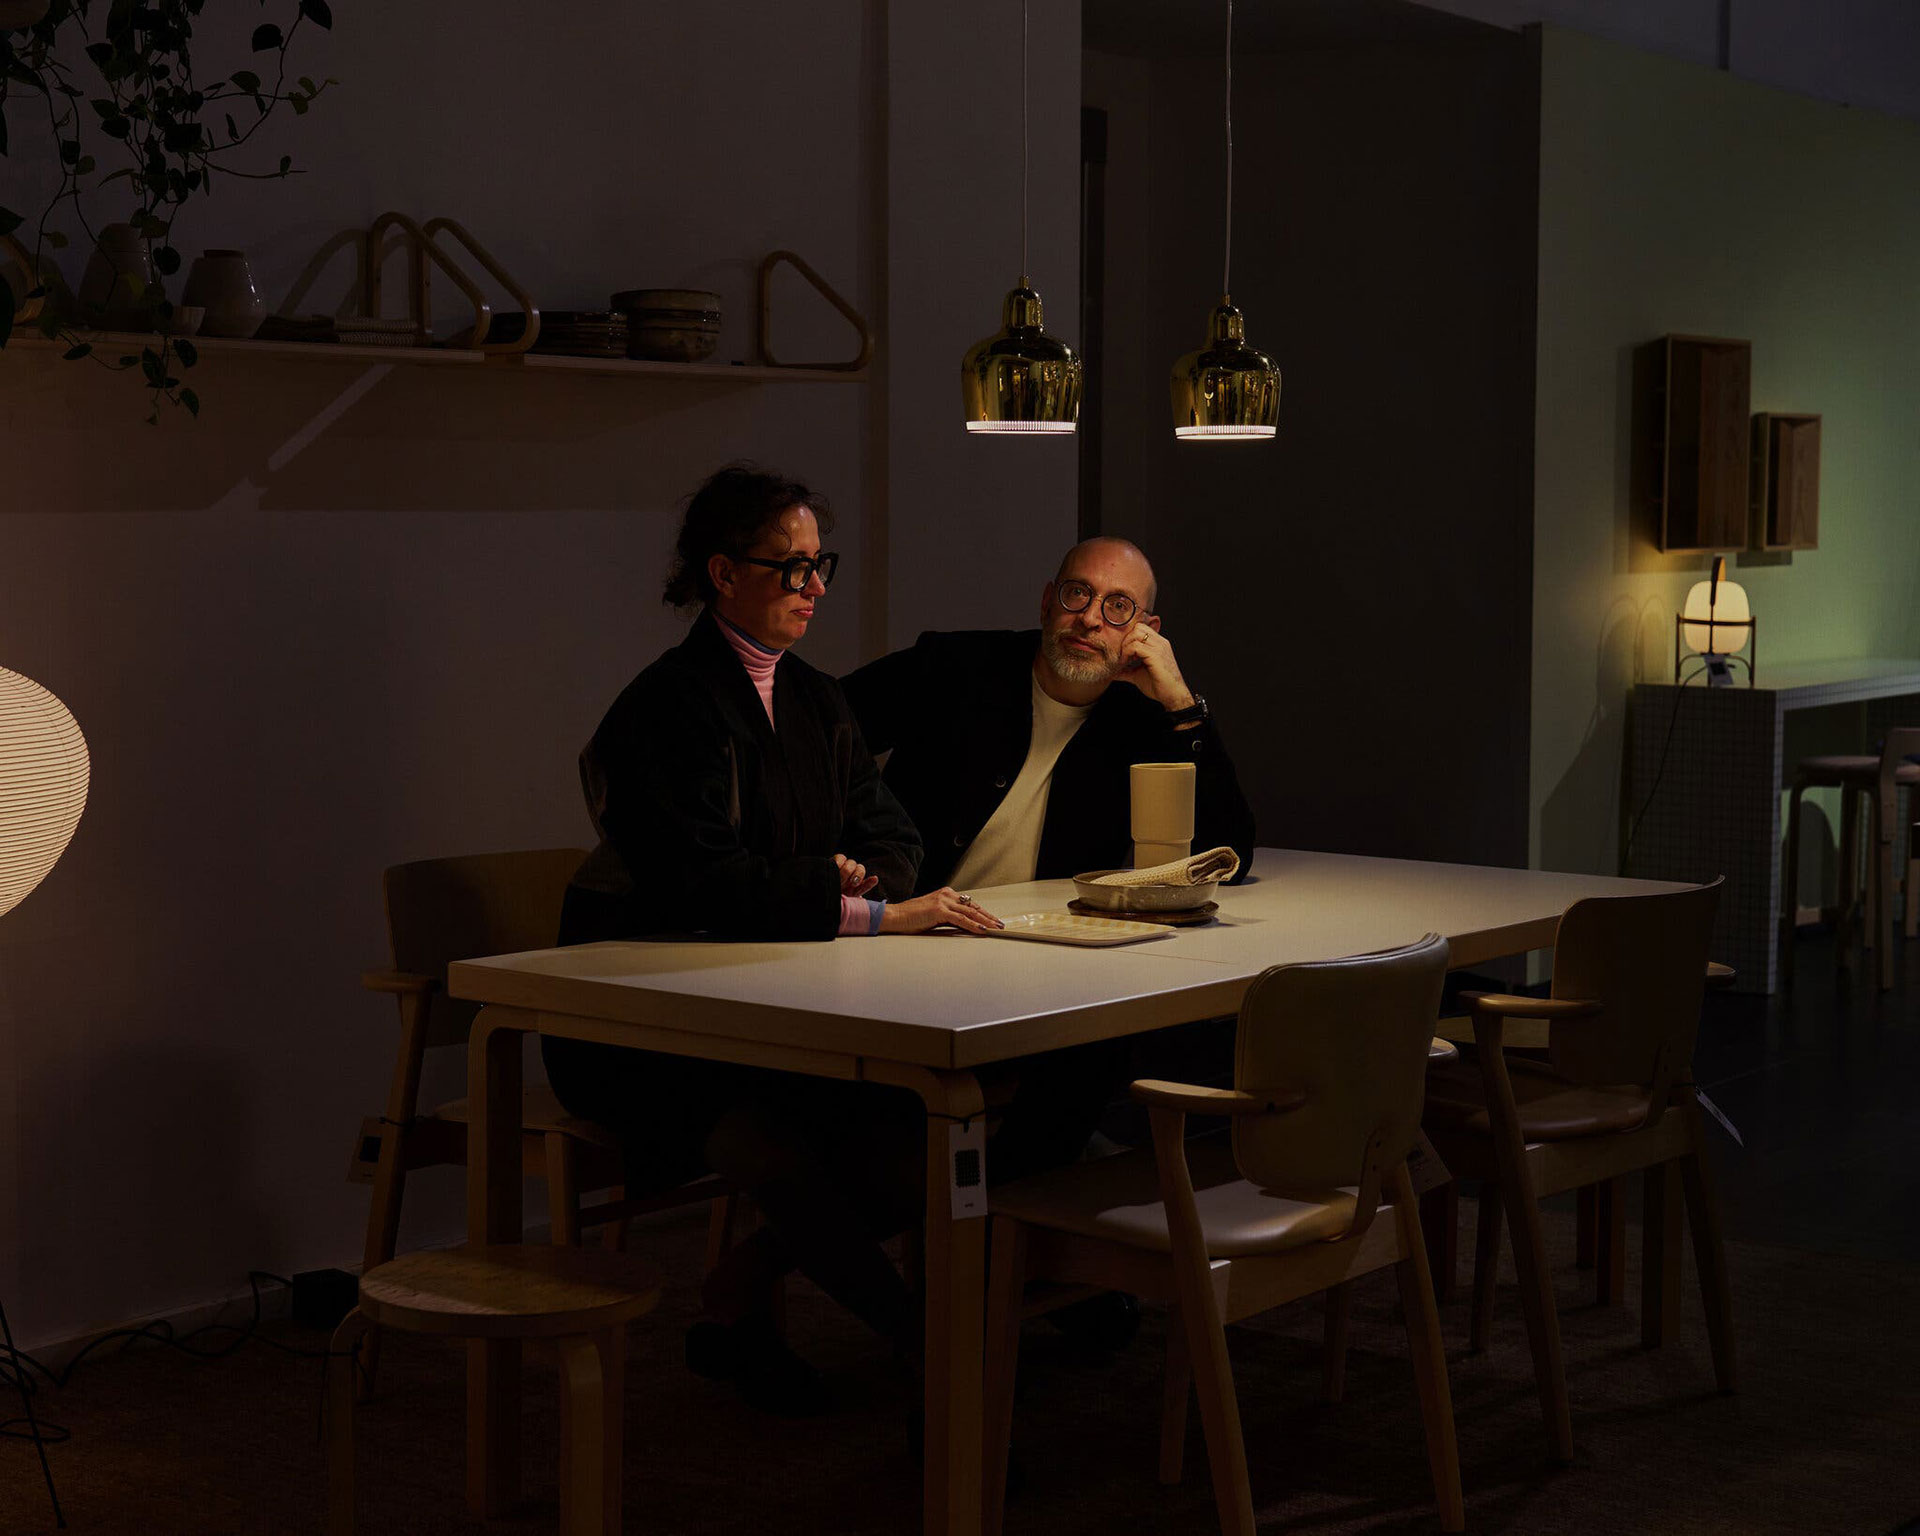 Hertta Kiiski, artista de técnicas mixtas, con su marido, Teemu Kiiski, director ejecutivo de Finnish Design Shop. La pareja afirma que la financiación pública de la educación y las artes ofrece a los finlandeses como Hertta Kiiski libertad artística